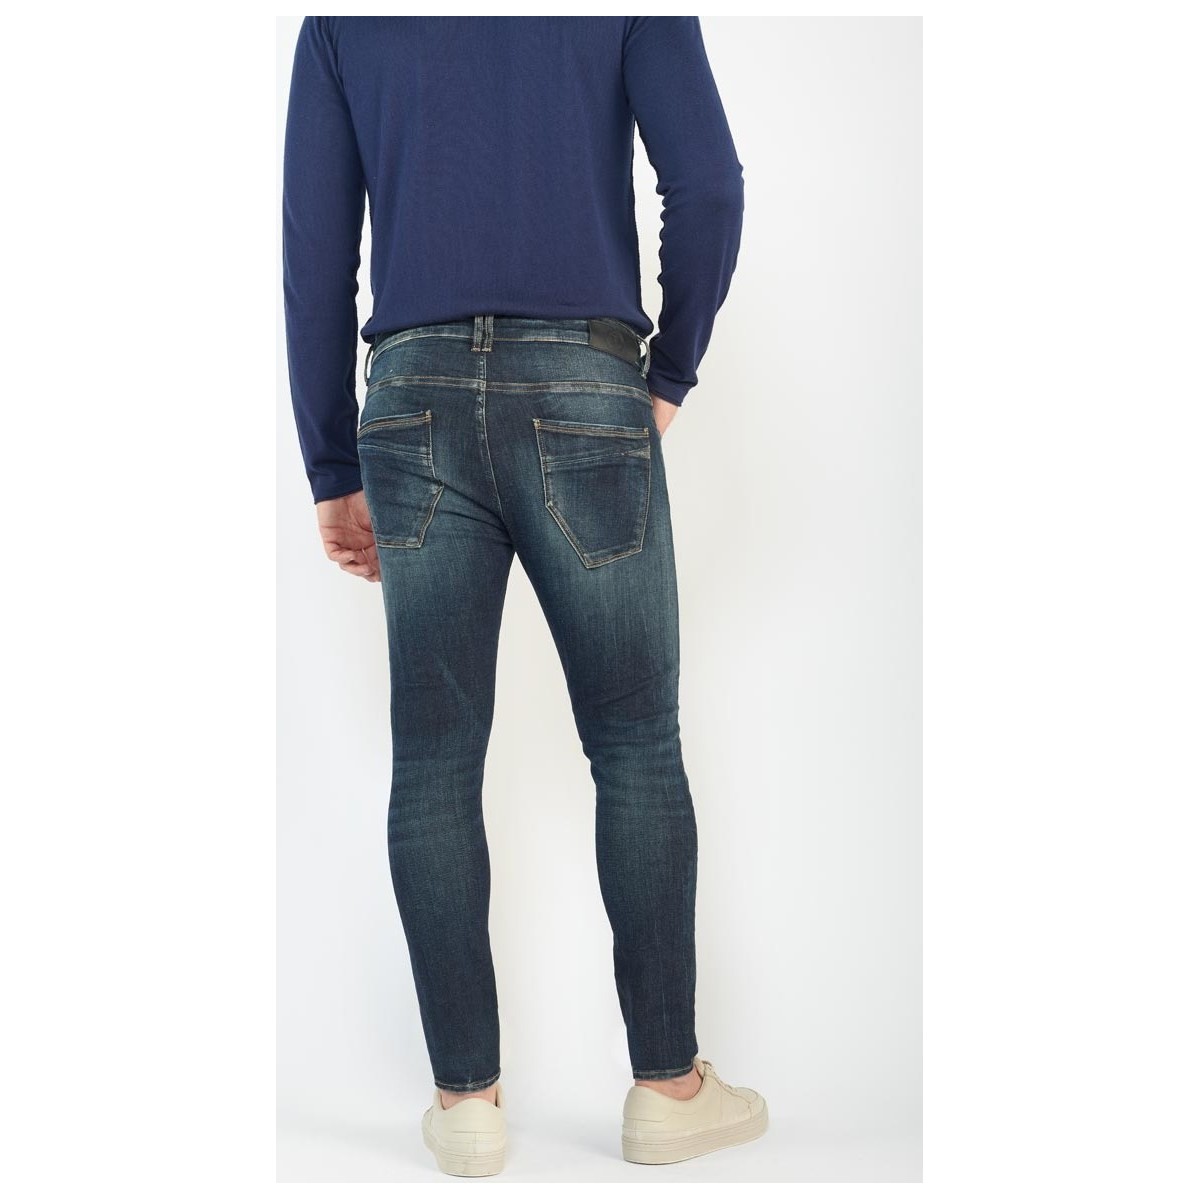 Le Temps des Cerises Bleu Power skinny 7/8ème jeans vintage bleu 2fwCzbG7